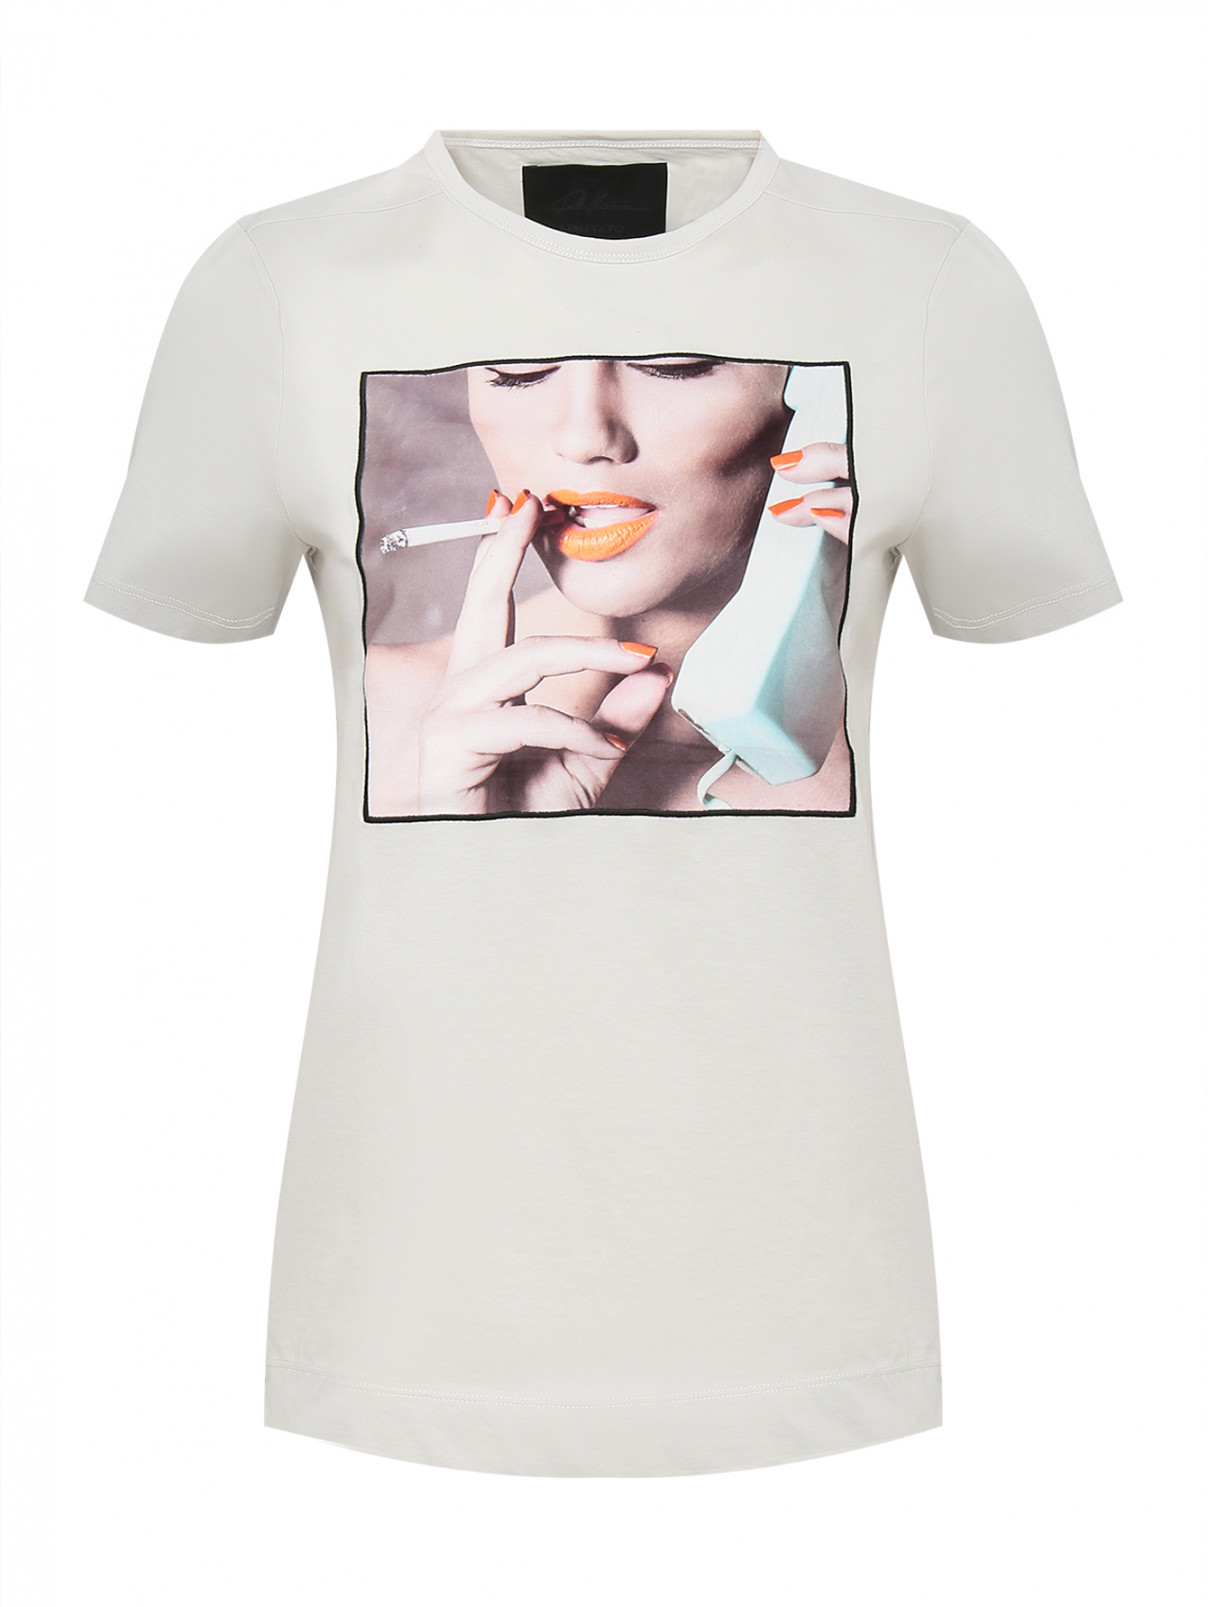 Трикотажная футболка с аппликацией Limitato  –  Общий вид  – Цвет:  Серый